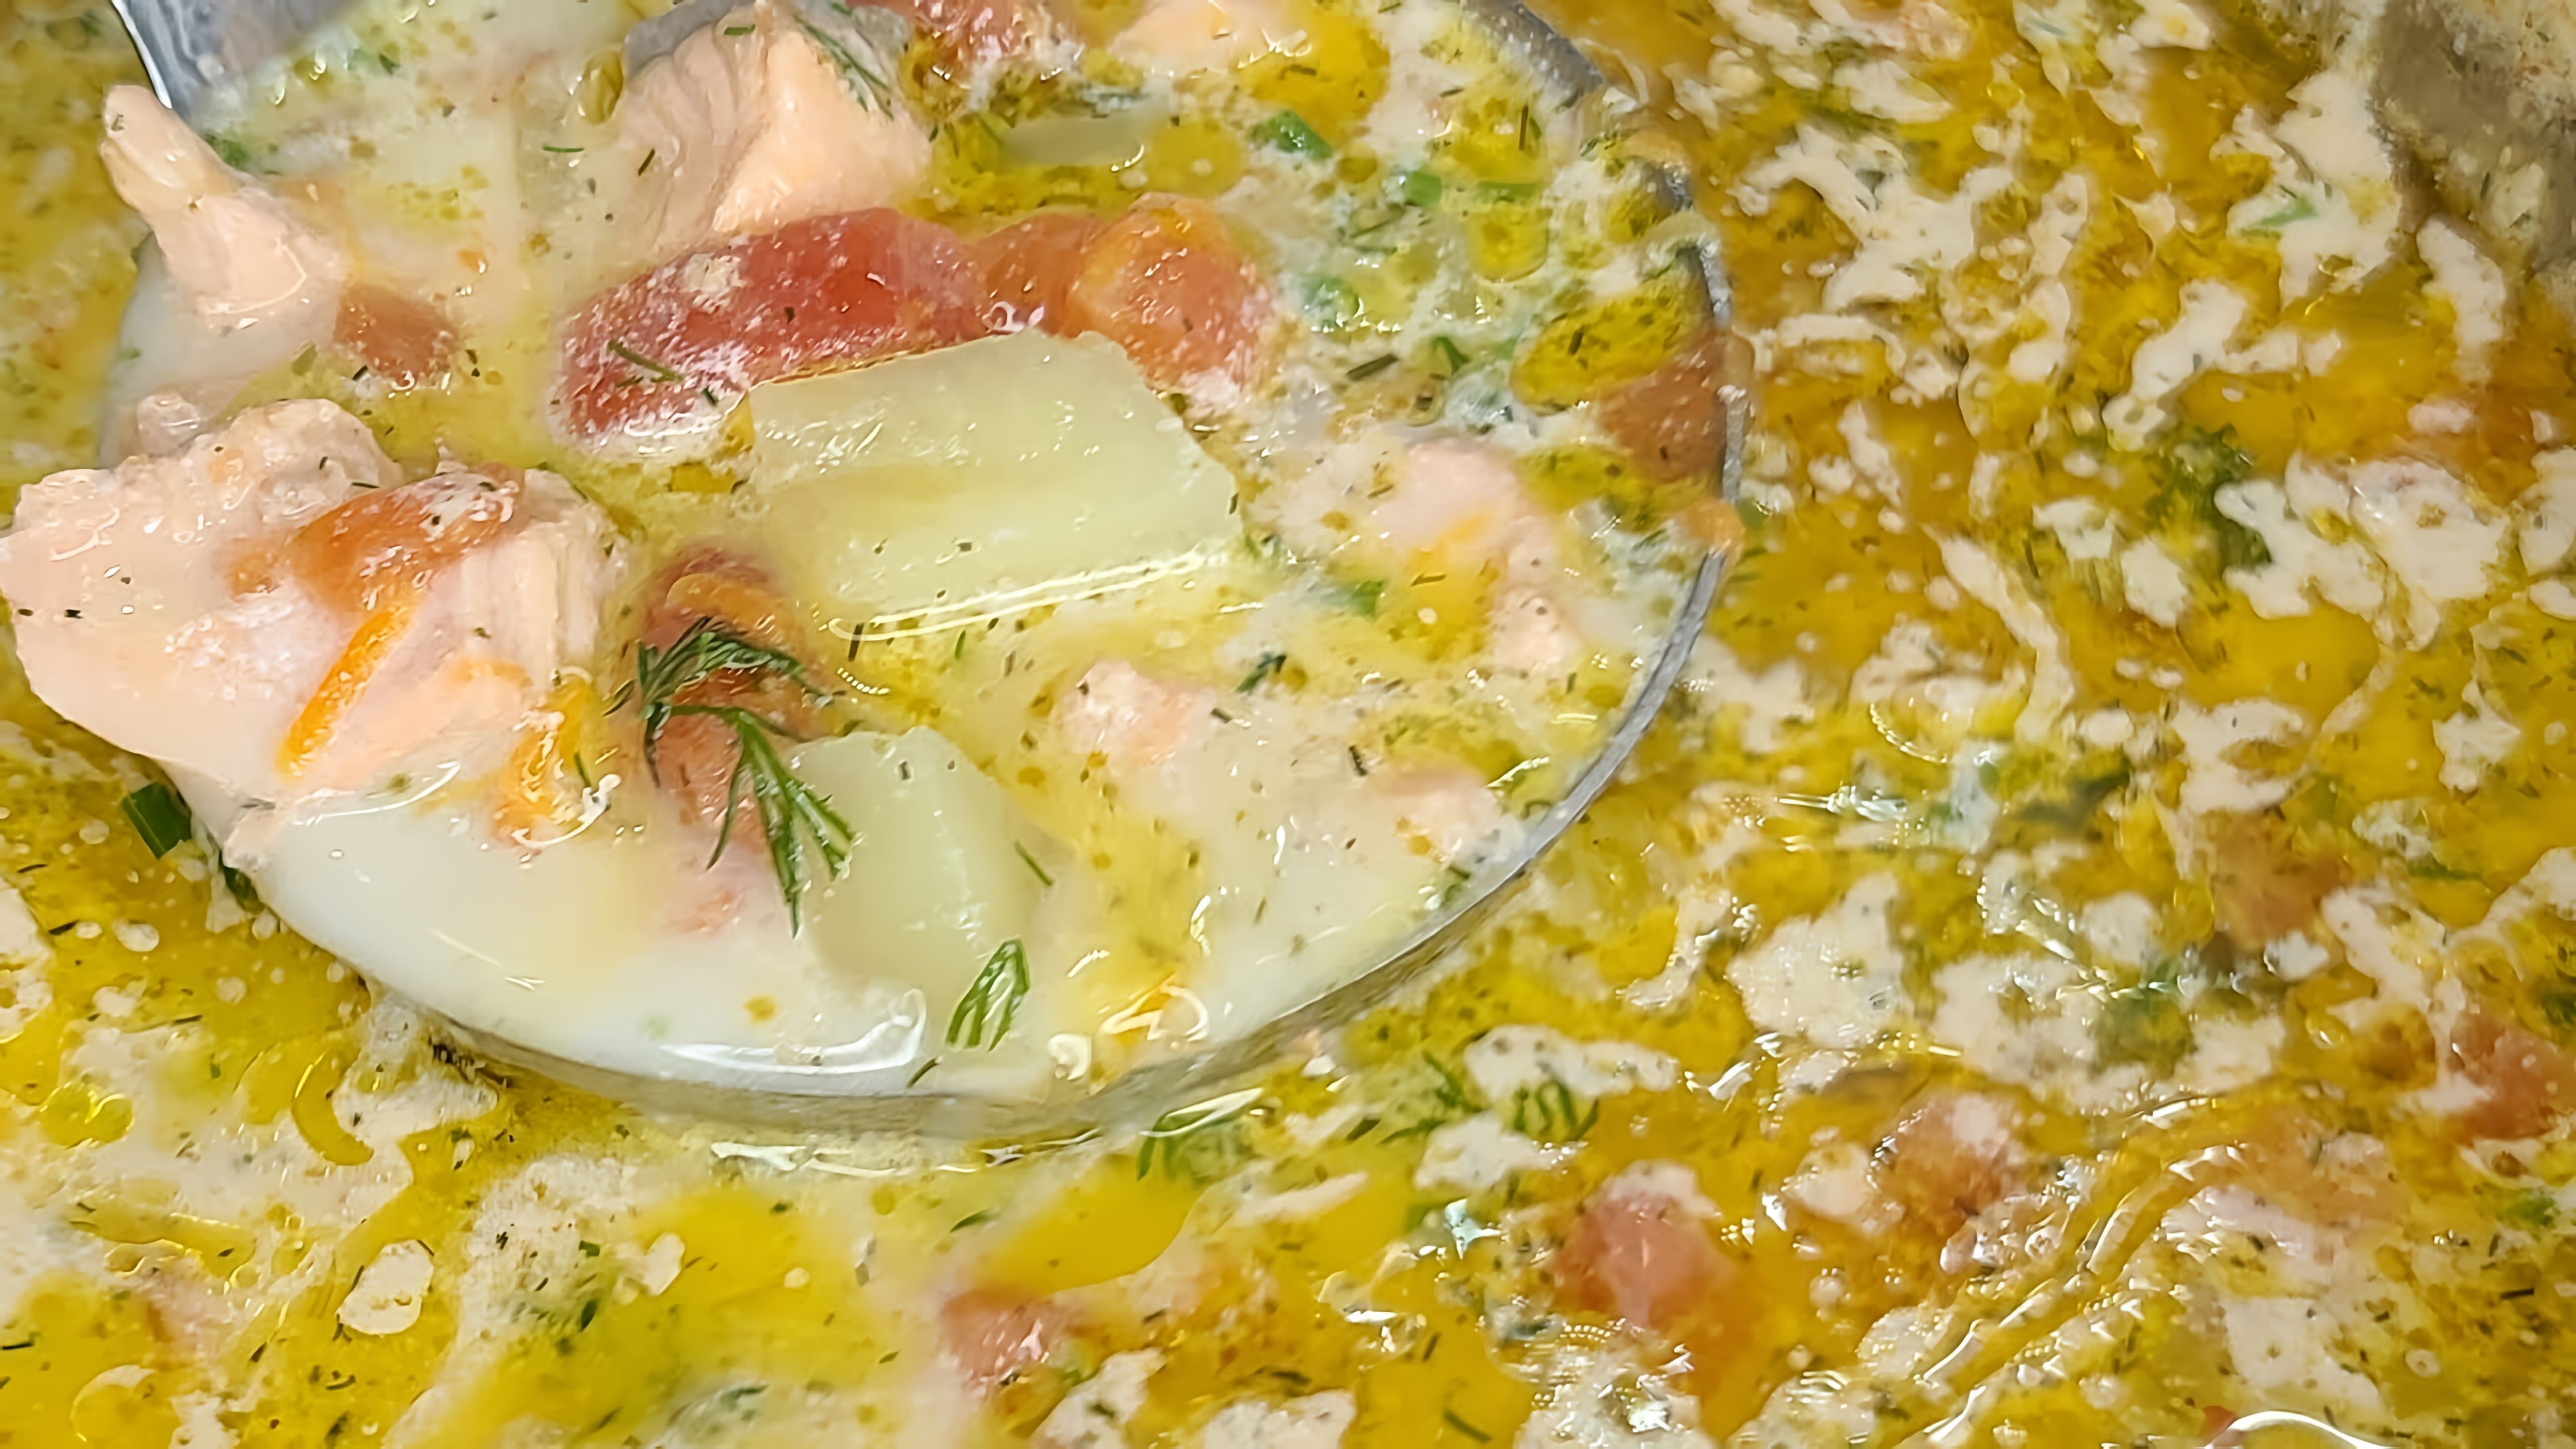 В этом видео демонстрируется процесс приготовления норвежского сливочного супа с лососем